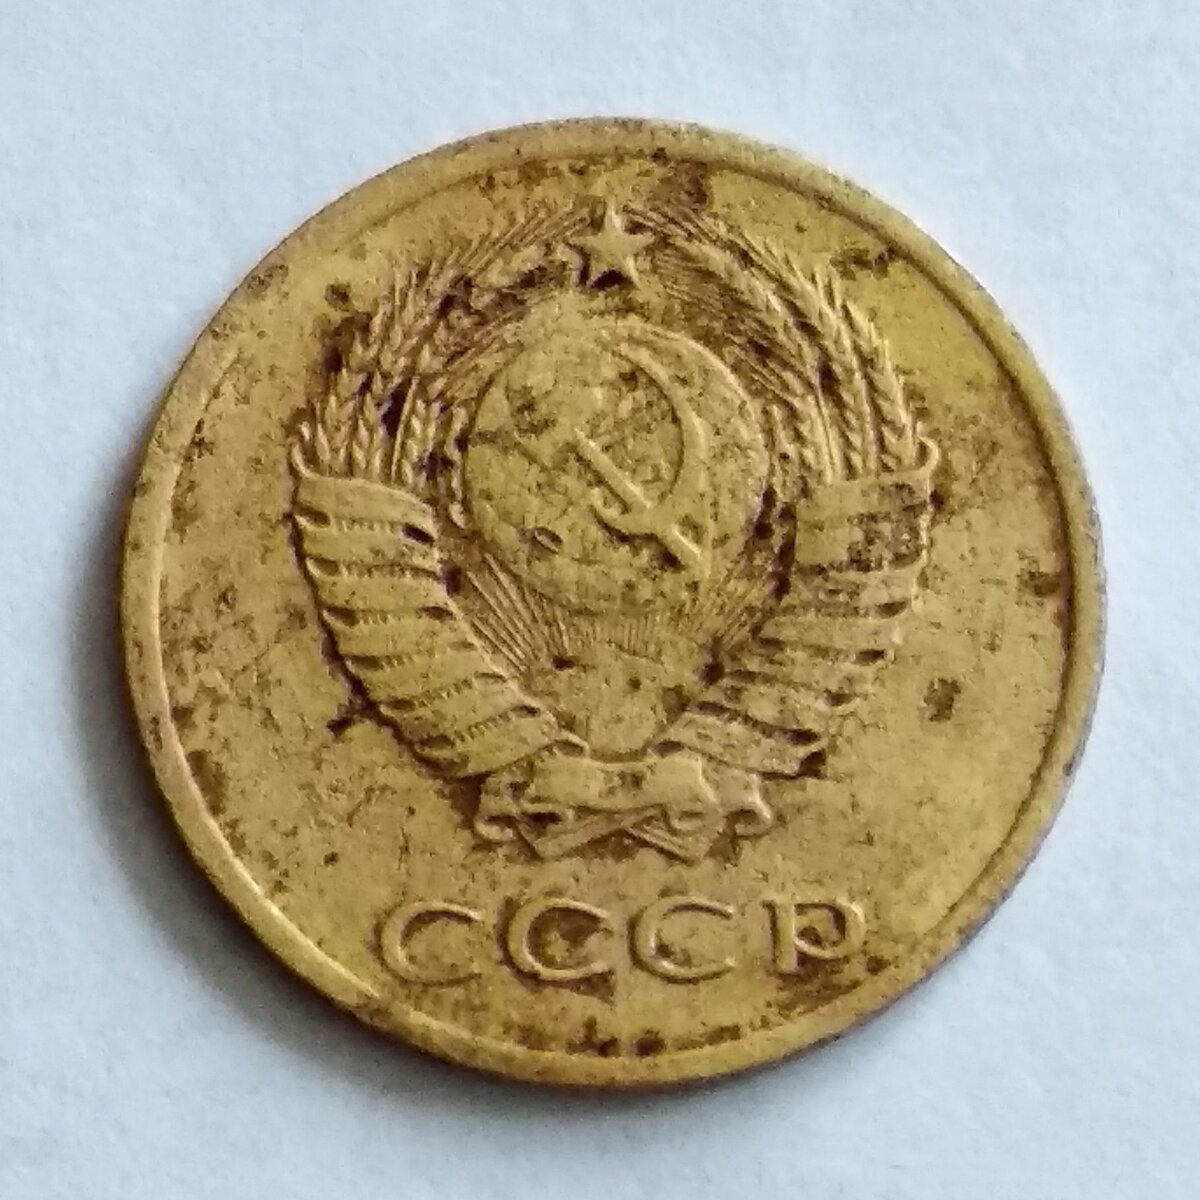 Советские монеты в большинстве своем практически бесценны, то есть они не имеют цены. То есть большая часть монет СССР стоит совсем недорого.-3